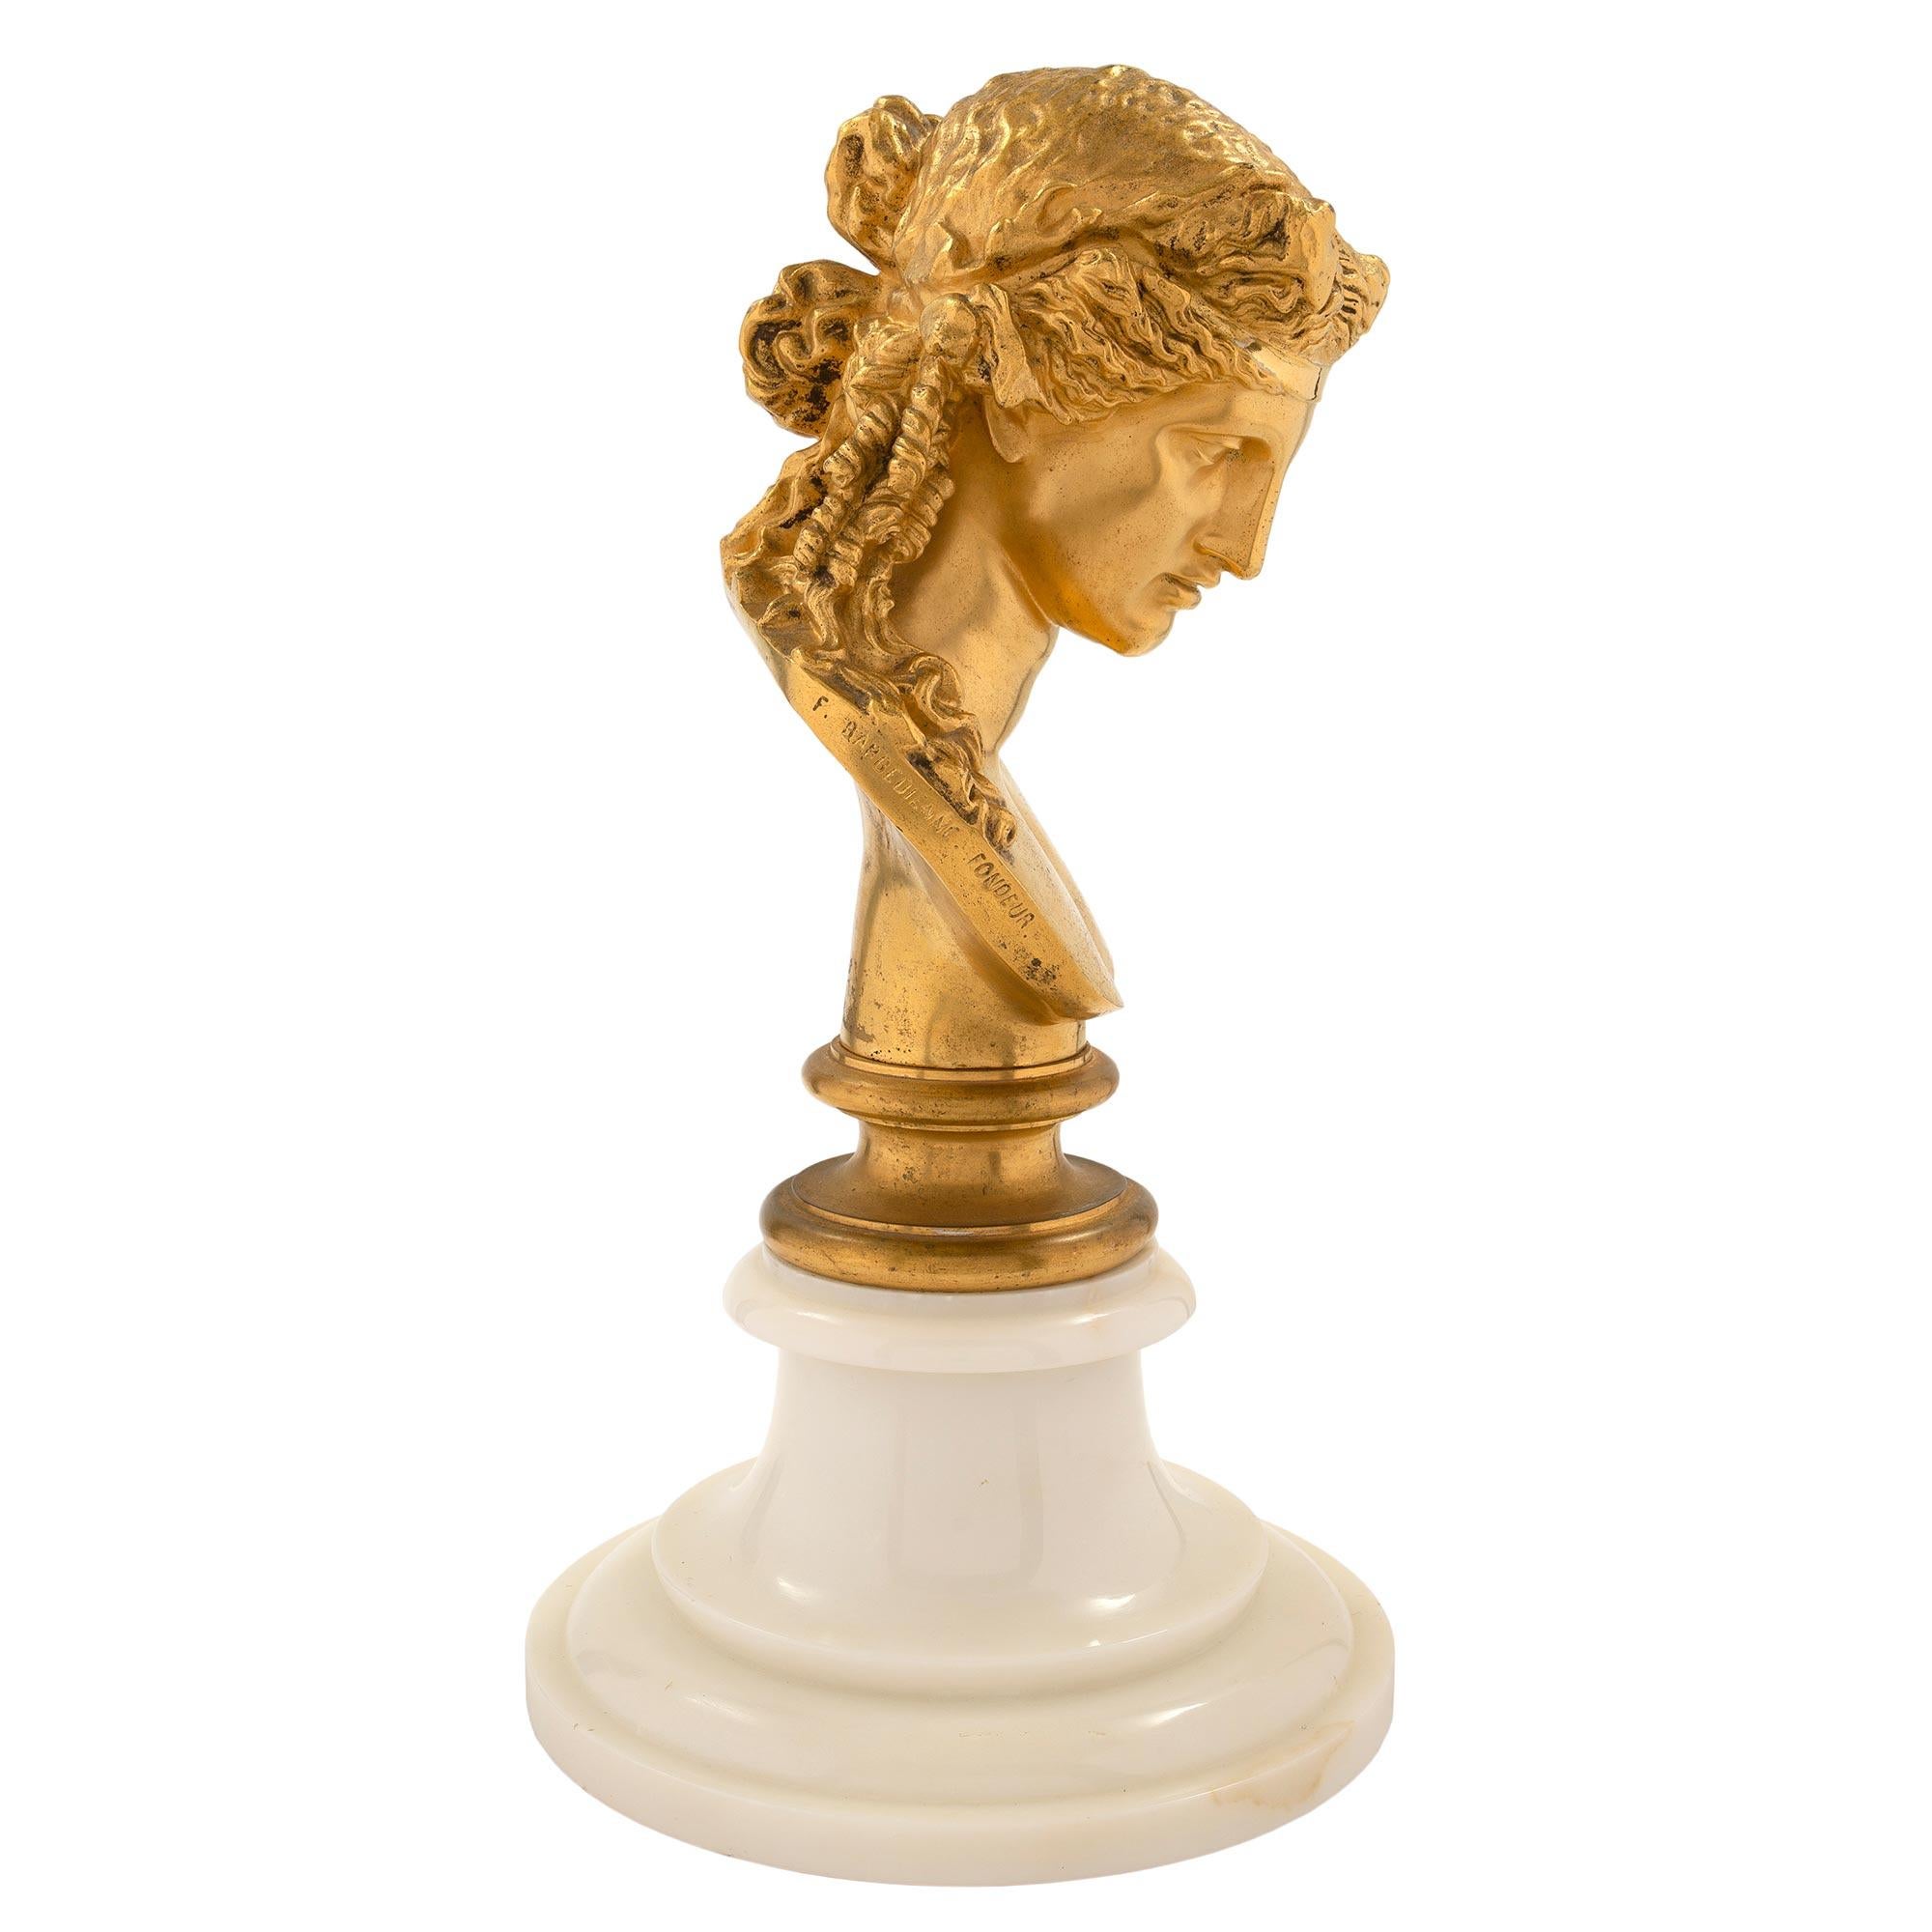 Elegant buste de Vénus en bronze doré de style Louis XVI, signé F. BARBEDIENNE FONDEUR. La statue est surélevée par un socle circulaire en marbre de Carrare blanc tacheté, avec un motif en escalier. Ci-dessus, la statue de Vénus en bronze doré,